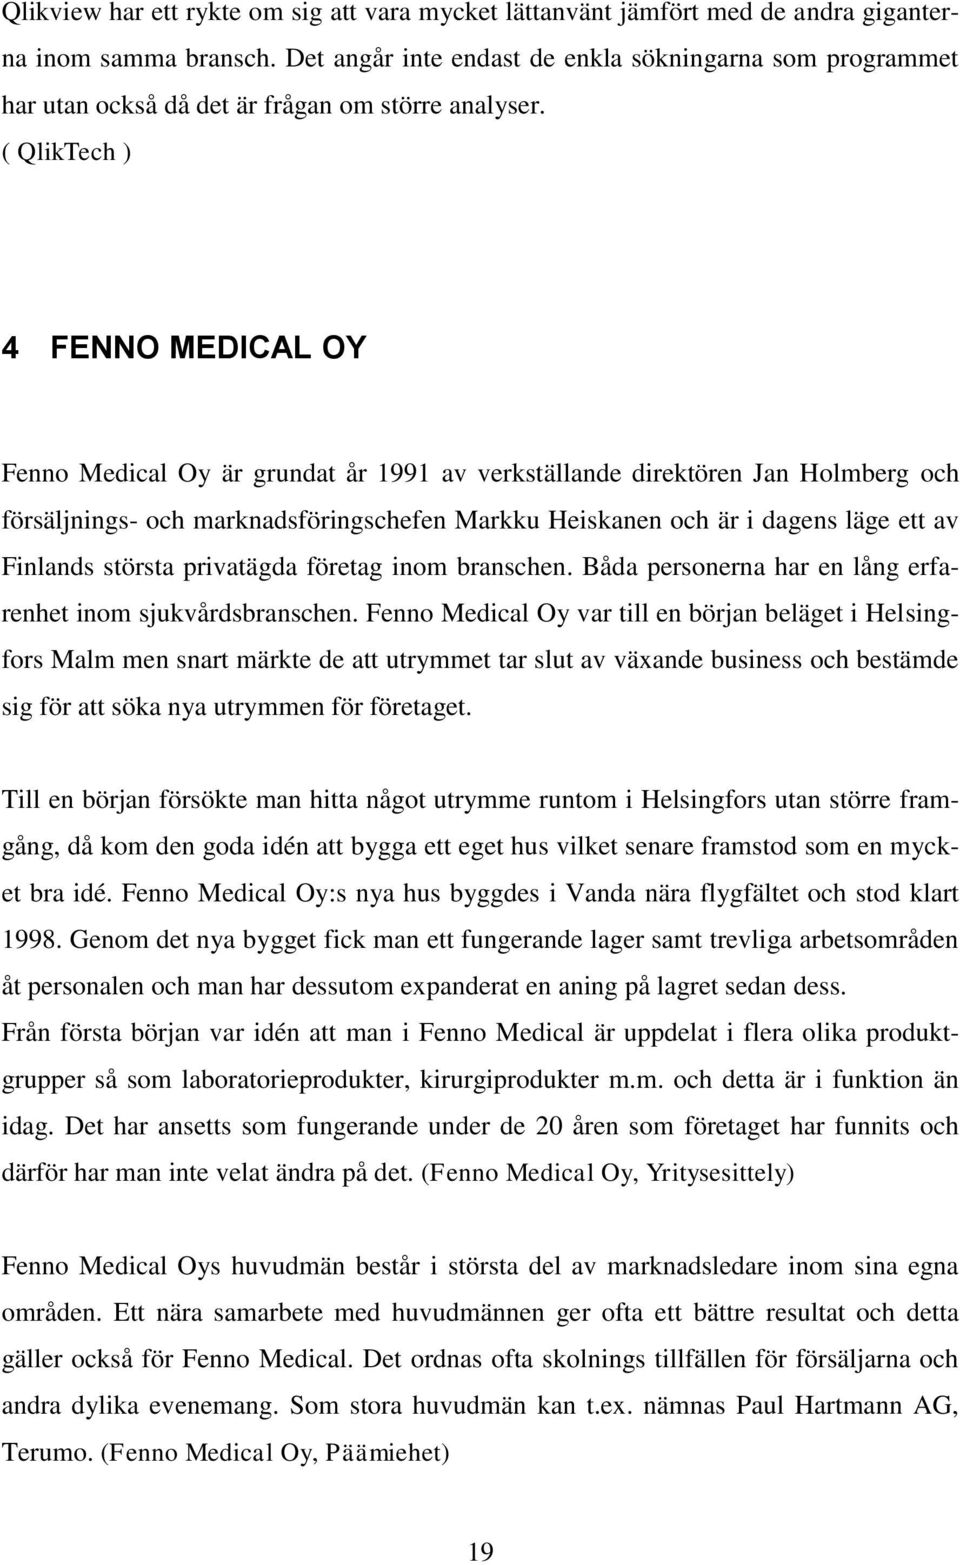 ( QlikTech ) 4 FENNO MEDICAL OY Fenno Medical Oy är grundat år 1991 av verkställande direktören Jan Holmberg och försäljnings- och marknadsföringschefen Markku Heiskanen och är i dagens läge ett av